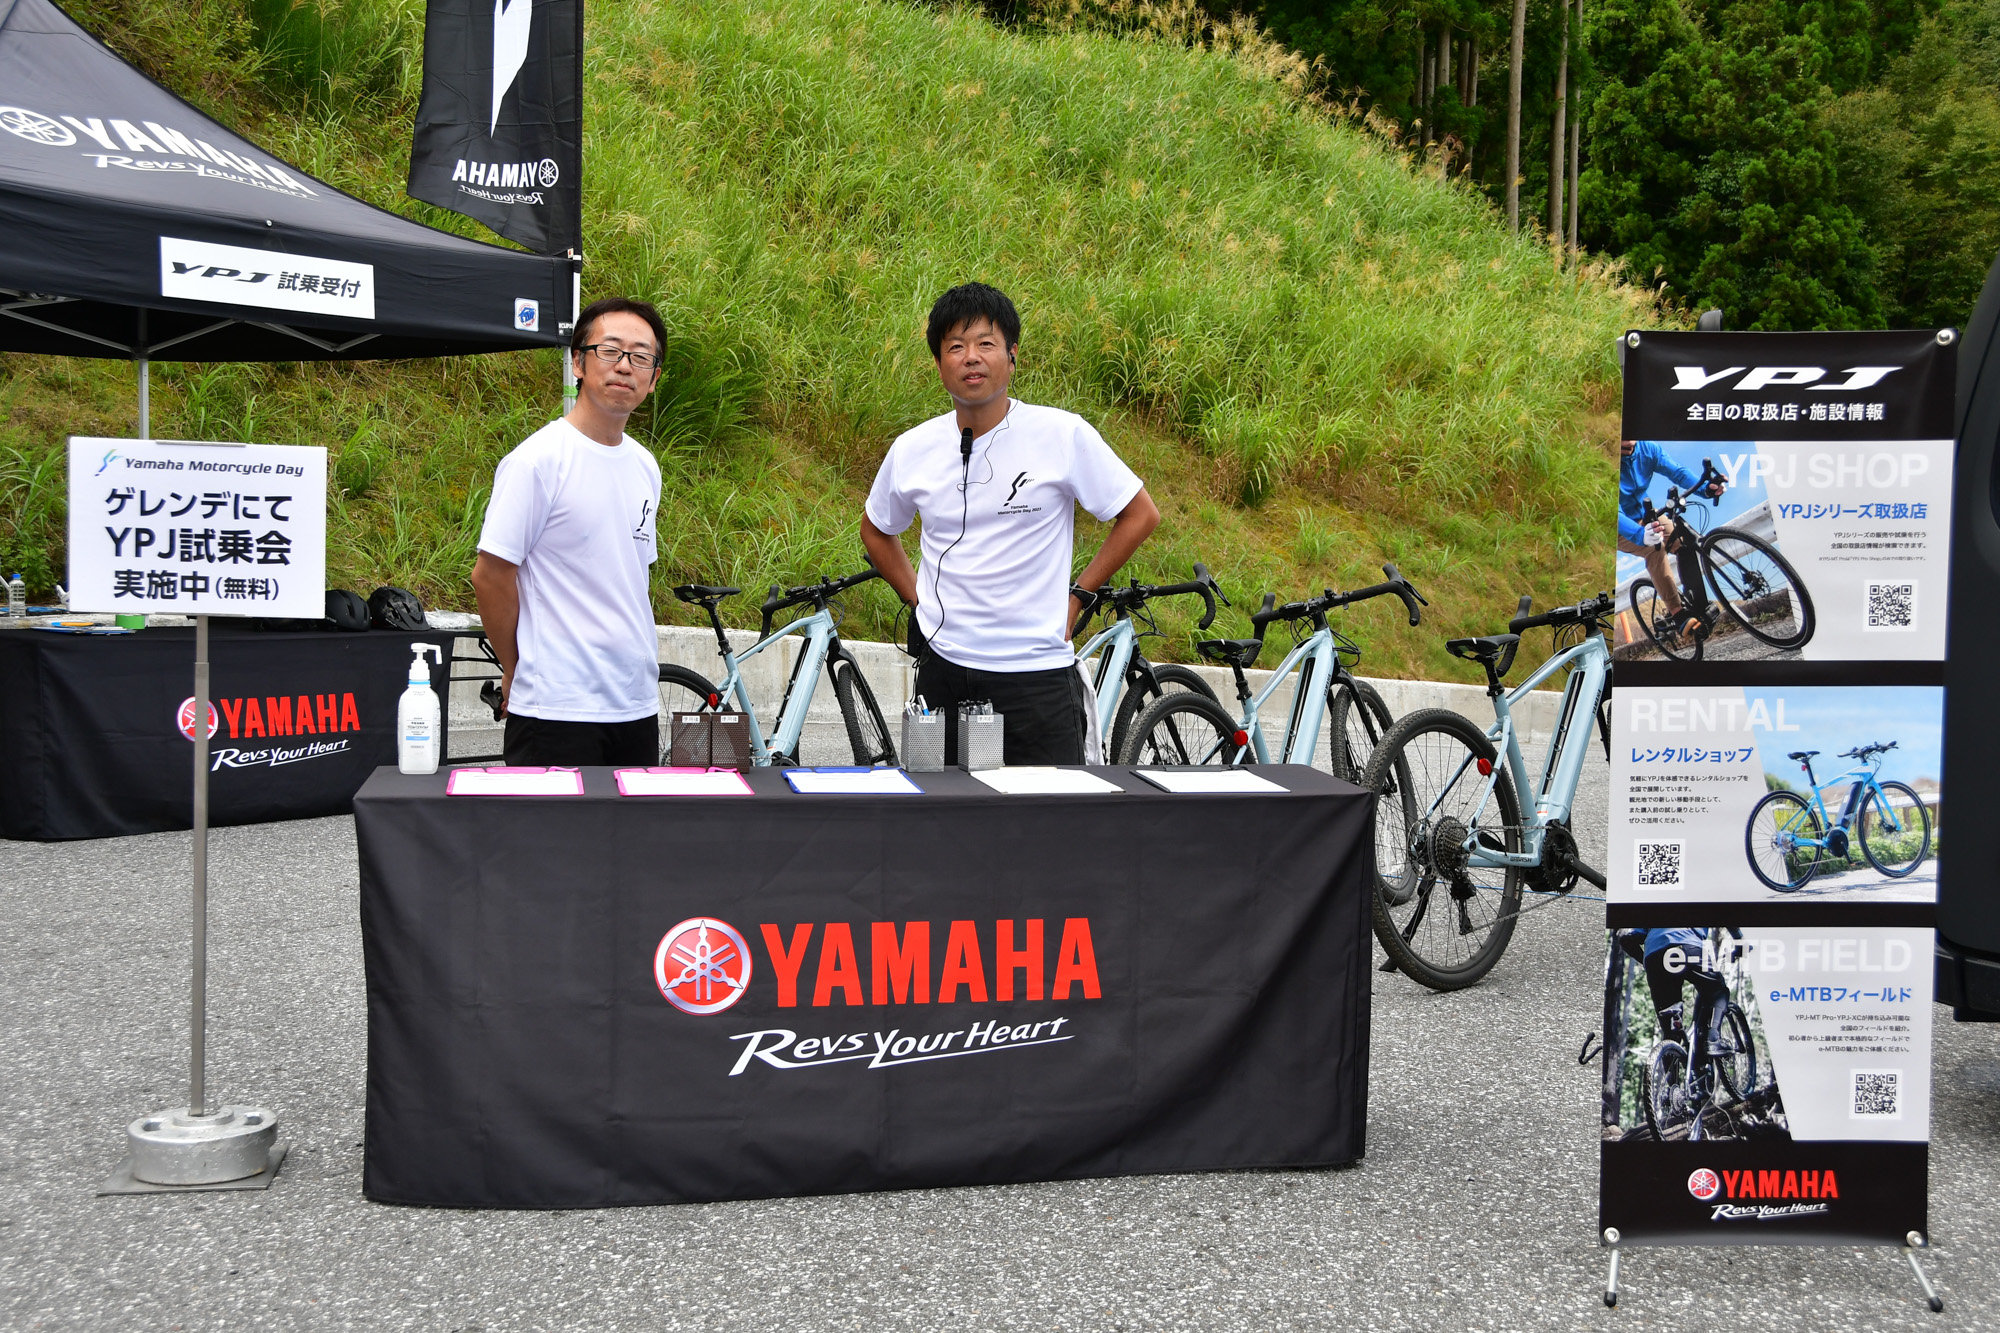 また会場の一角とゲレンデにてスポーツ電動自転車「YPJシリーズ」の試乗会を実施。